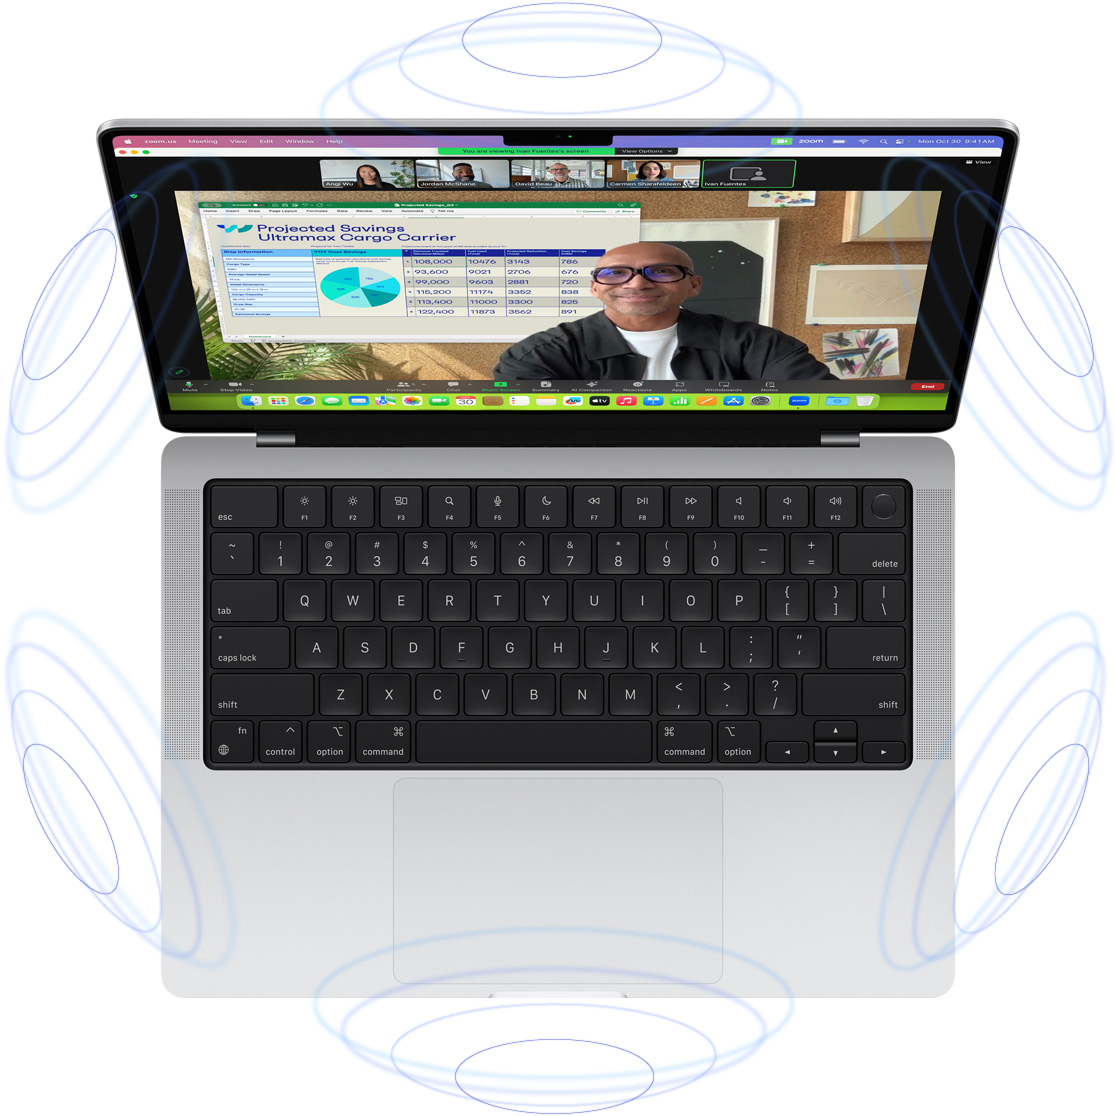 Un apel video FaceTime pe MacBook Pro, înconjurat de ilustrații cu cercuri albastre pentru a sugera sentimentul 3D oferit de Audio spațial